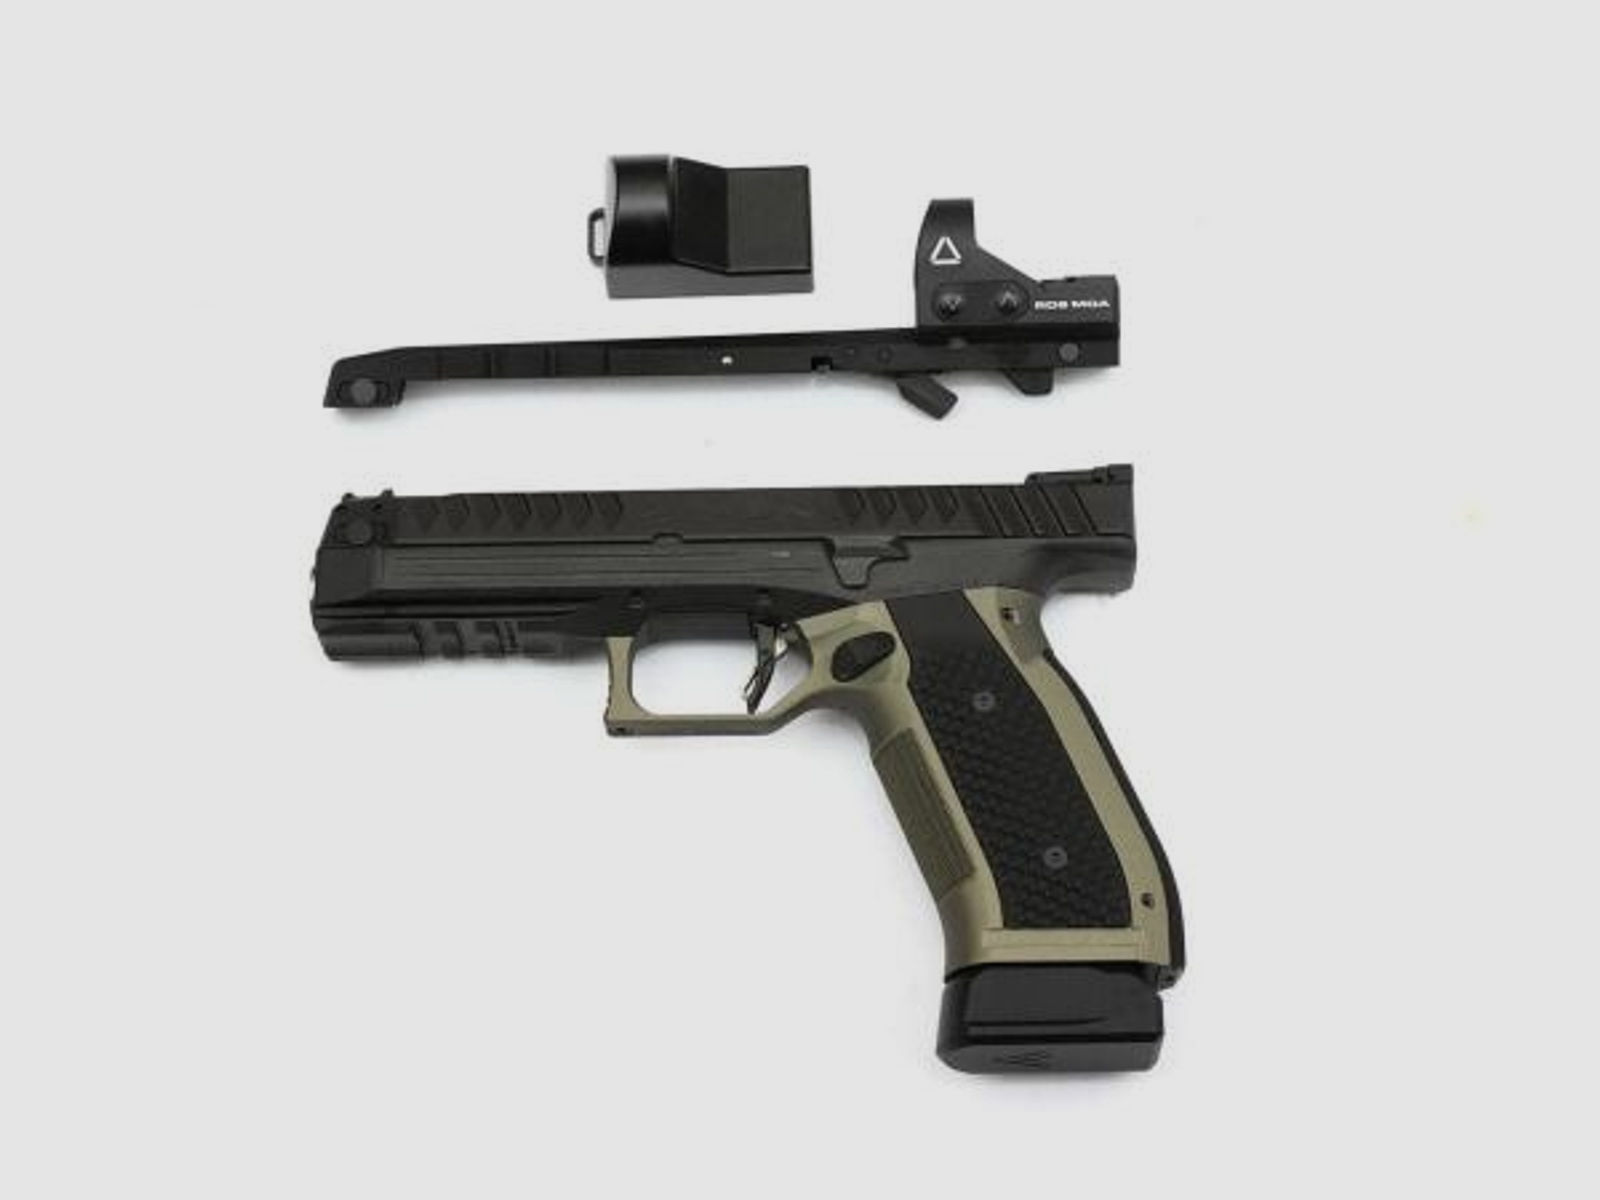 Laugo Arms Tuning/Ersatzteil f. Pistole für ALIEN OptikSchiene Optical Sight Ready Upper